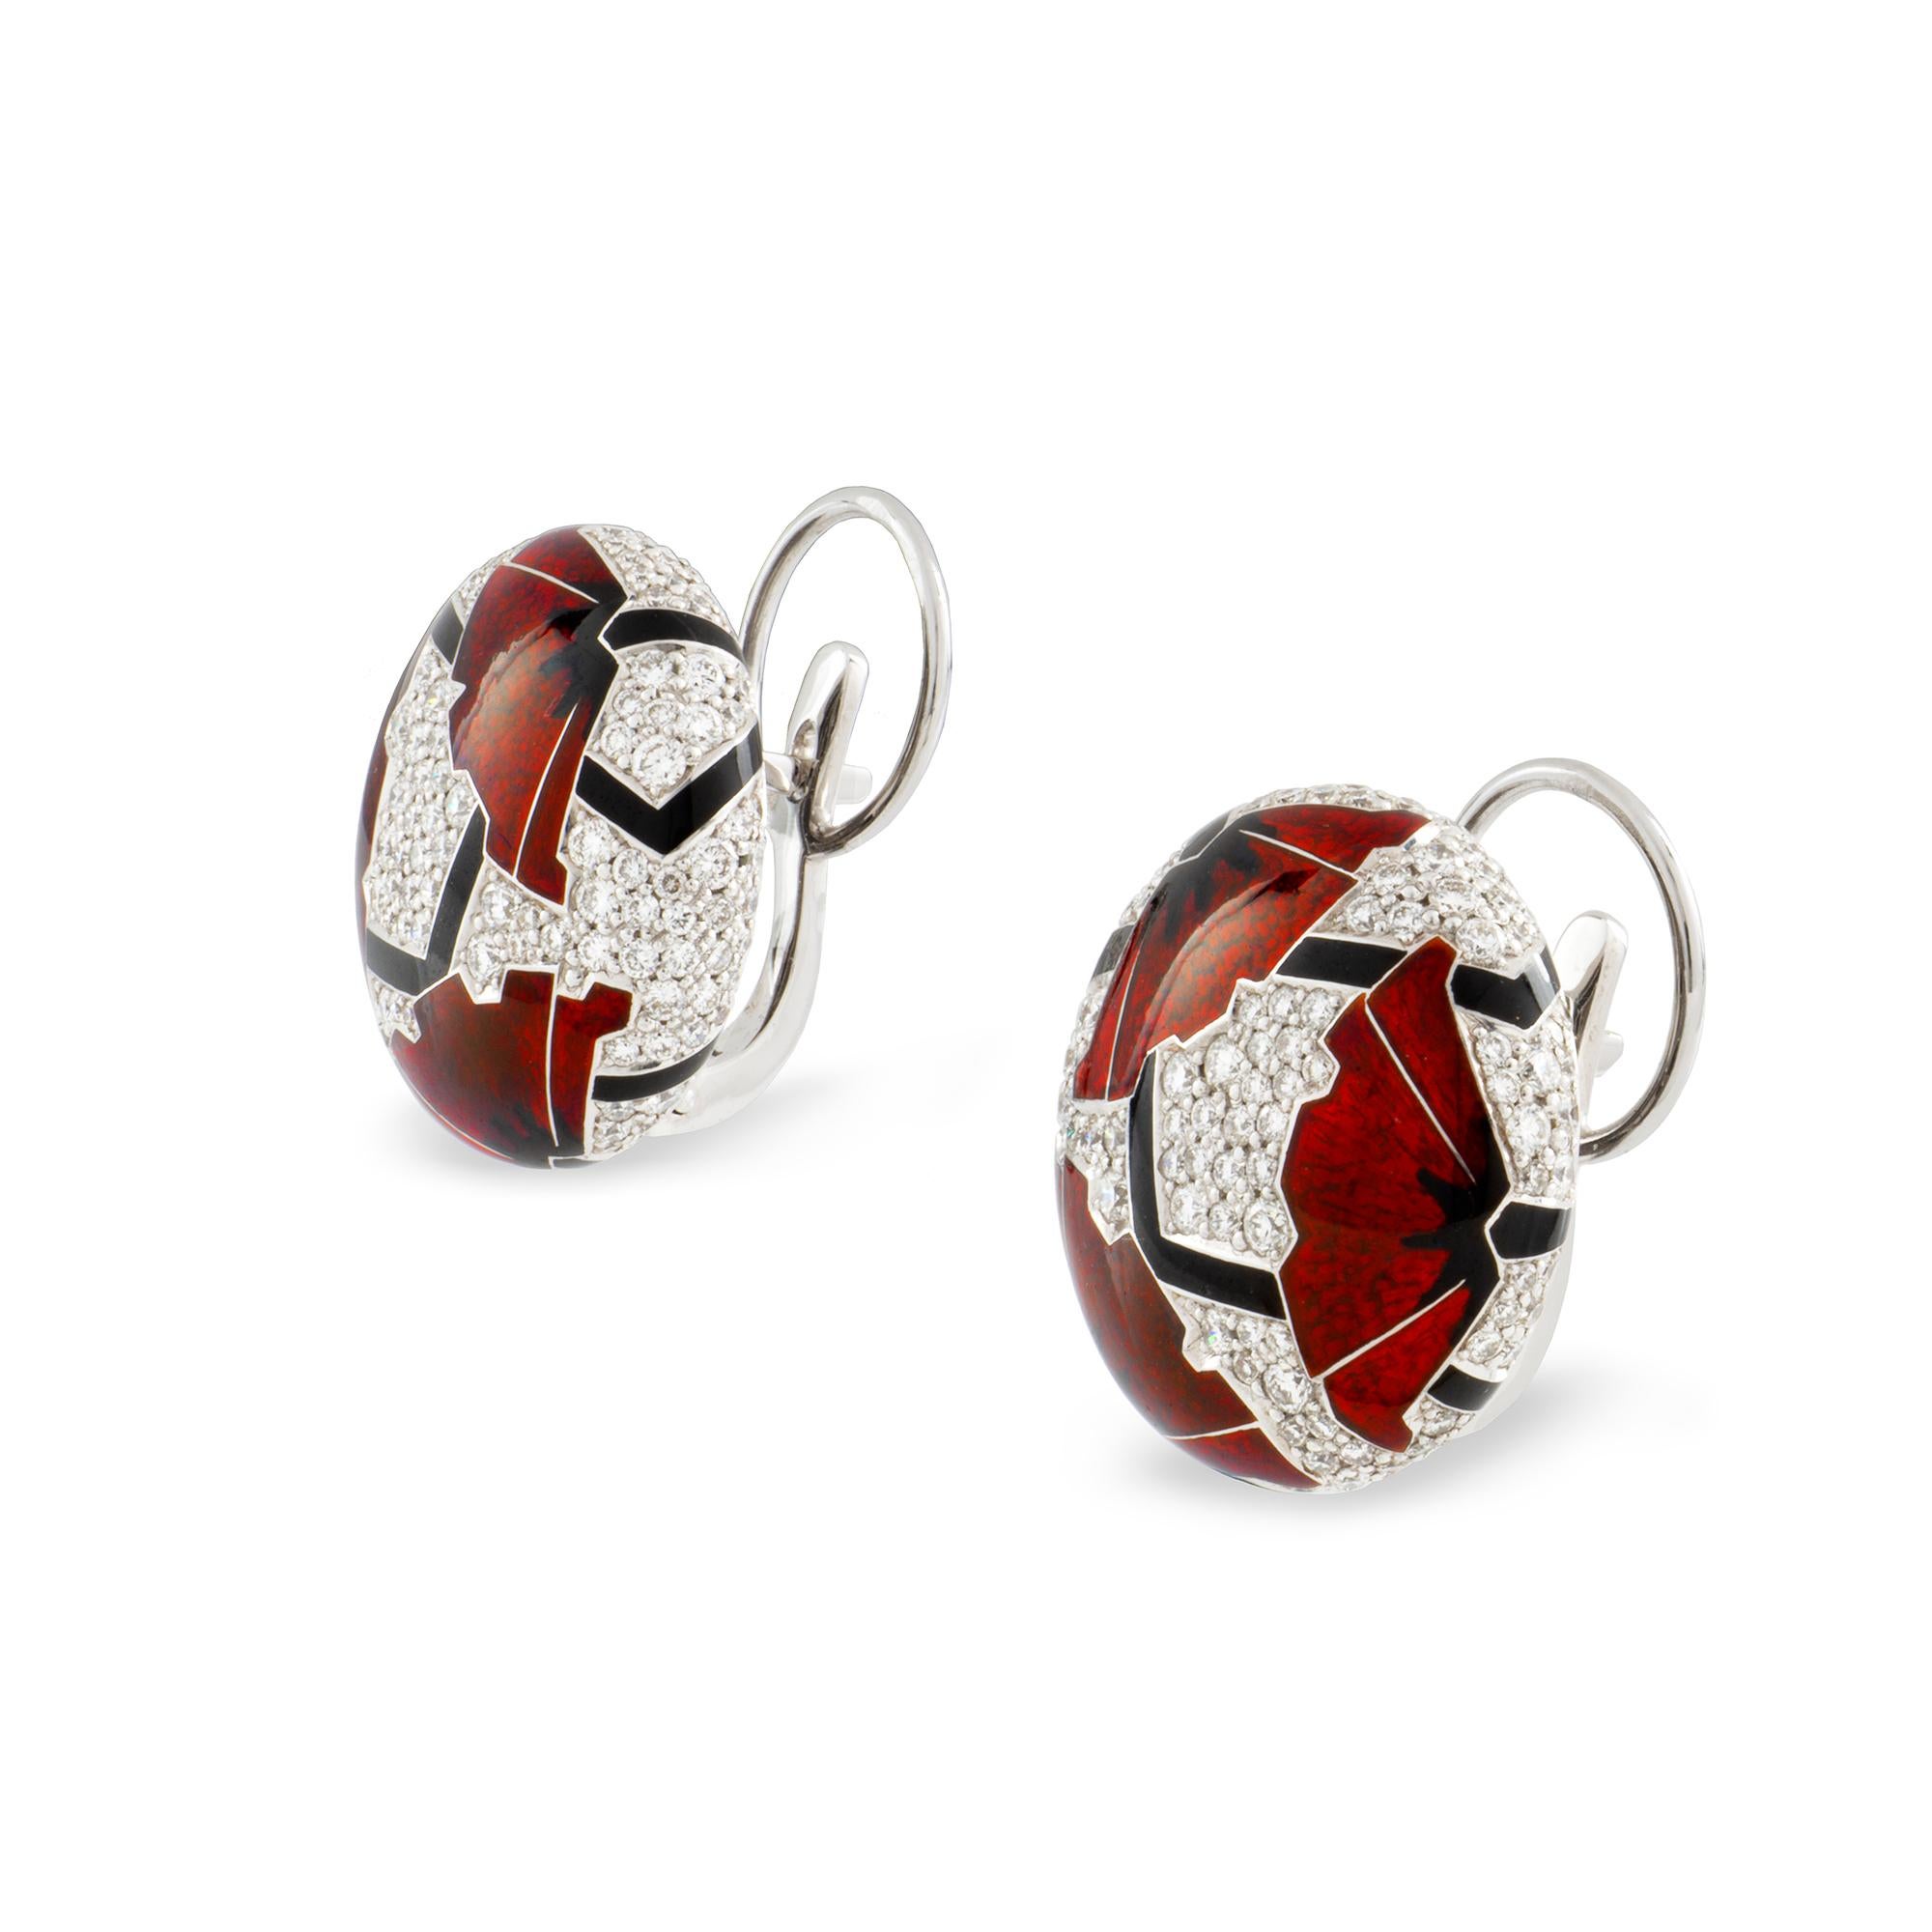 Ein Paar rote Mohnohrringe im Art-Deco-Stil von Ilgiz F, jeder Ohrring mit drei Mohnblumen mit champlevé-emaillierten Blütenblättern und heißemaillierten Stielen, auf einem runden Hintergrund mit Diamanten in Pave-Fassung, die Diamanten wiegen